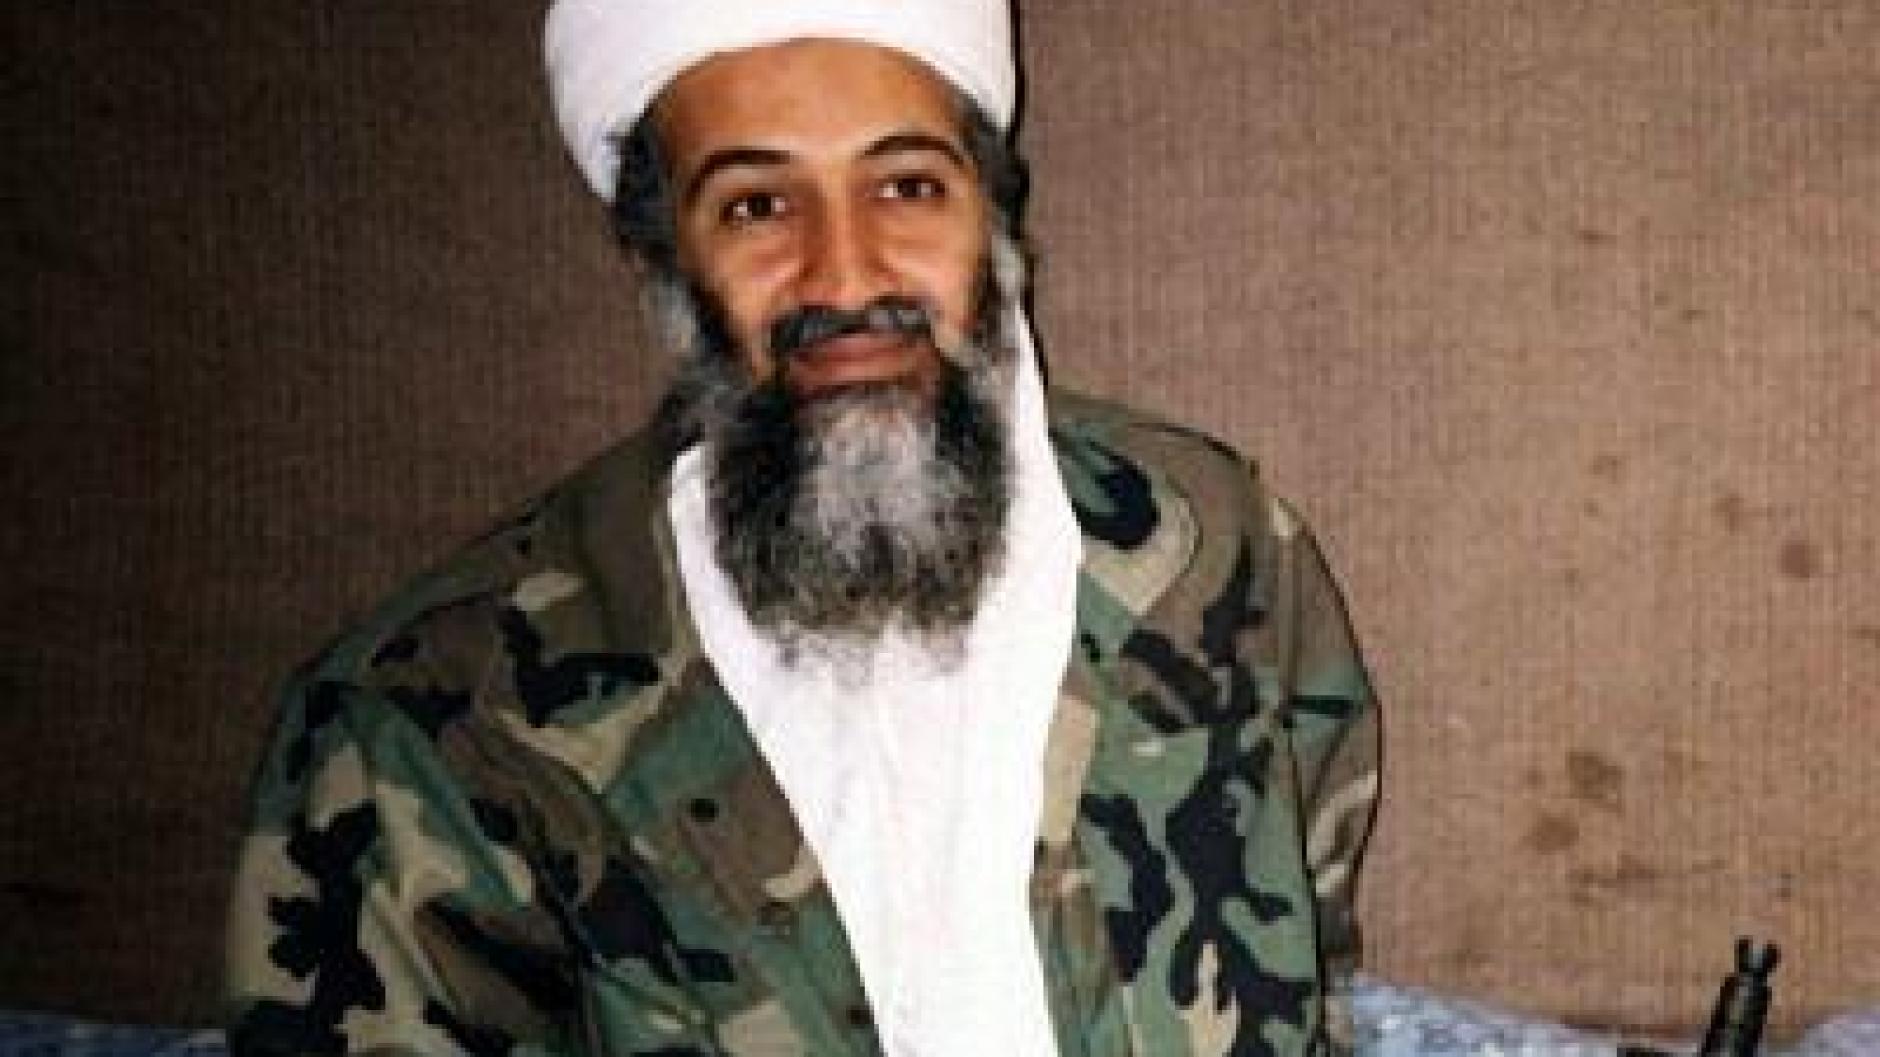 39+ Osama bin laden tot bild , Terrorismus Geheimdienst hält Bin Laden für tot Augsburger Allgemeine